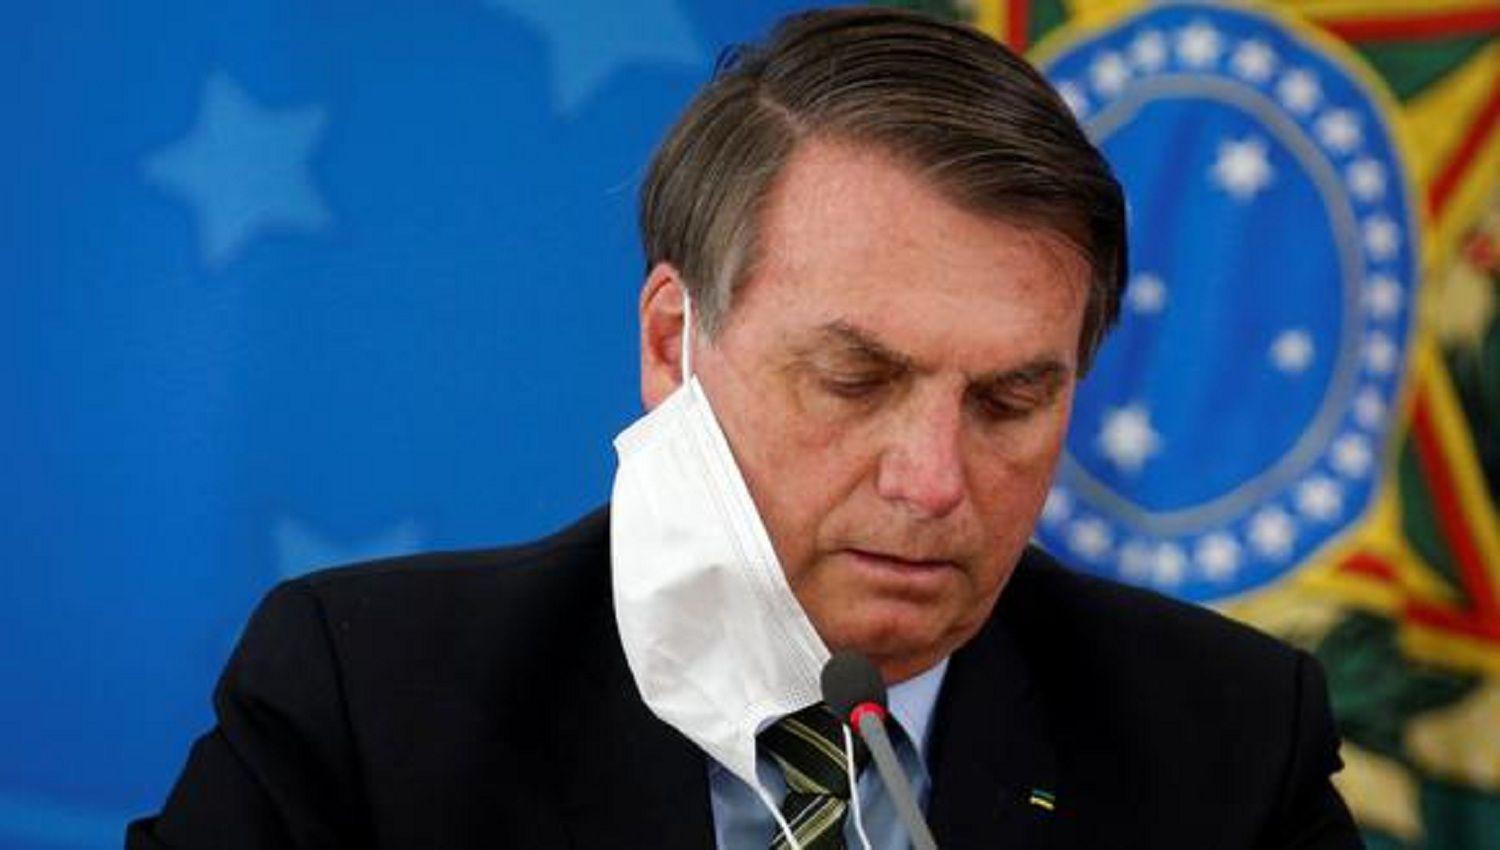 El 56-en-porciento- de la población considera que el presidente Bolsonaro no tiene condiciones de liderar el país